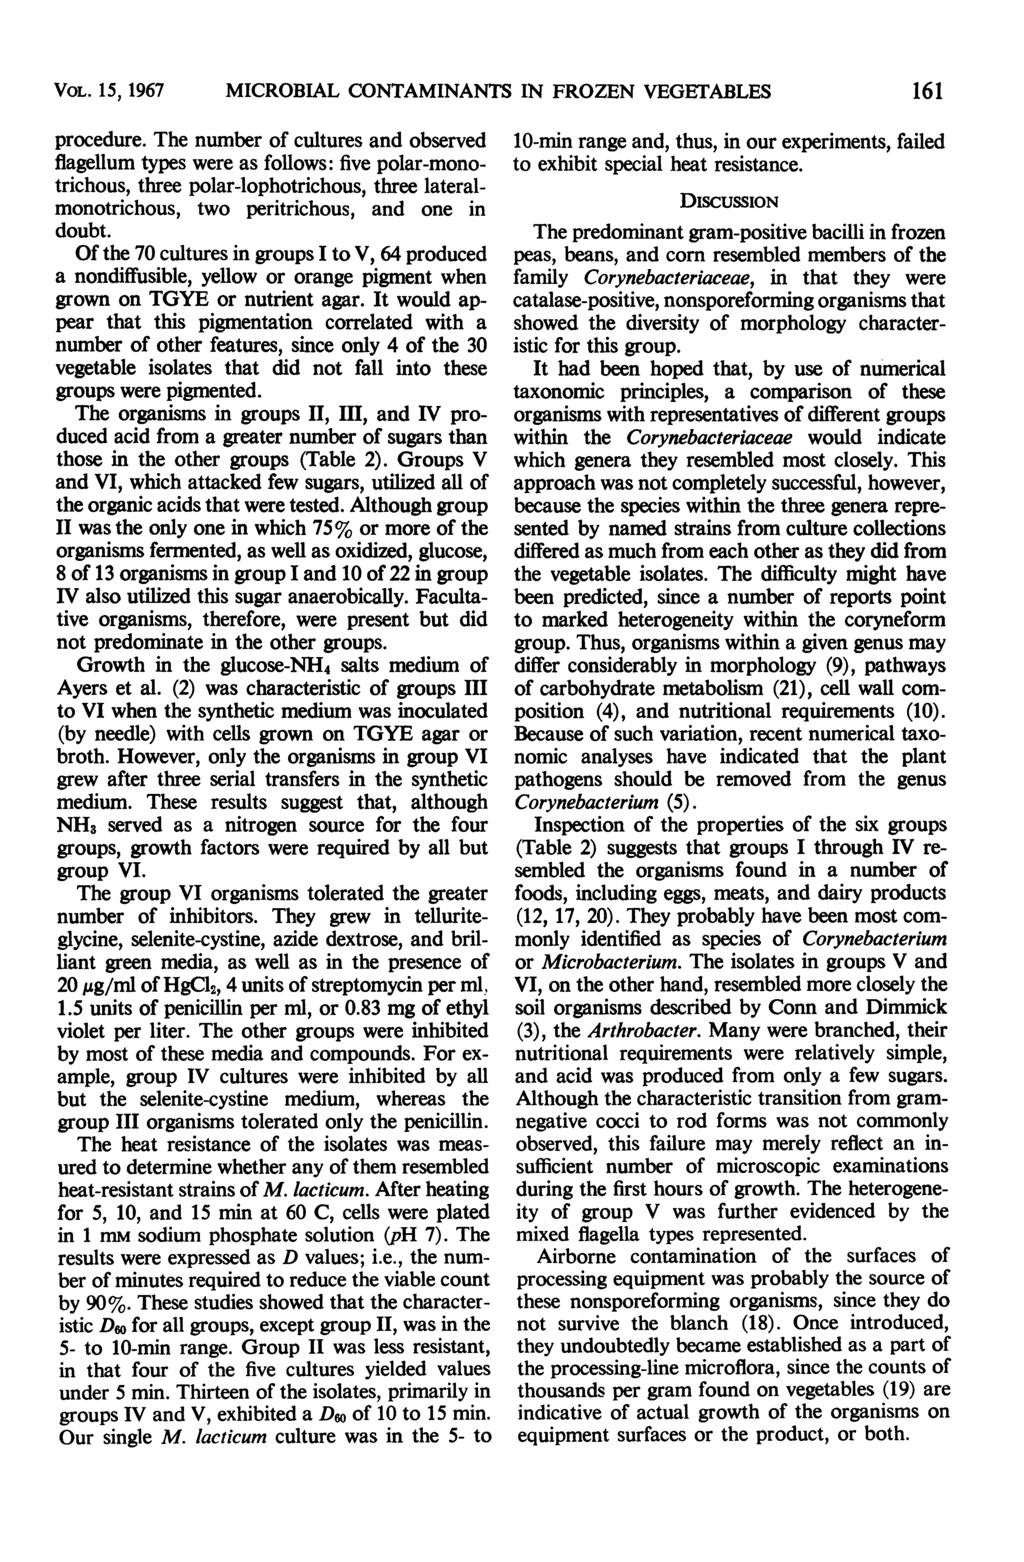 VOL. 15, 1967 MCROBAL CONTAMNANTS N FROZEN VEGETABLES procedure.